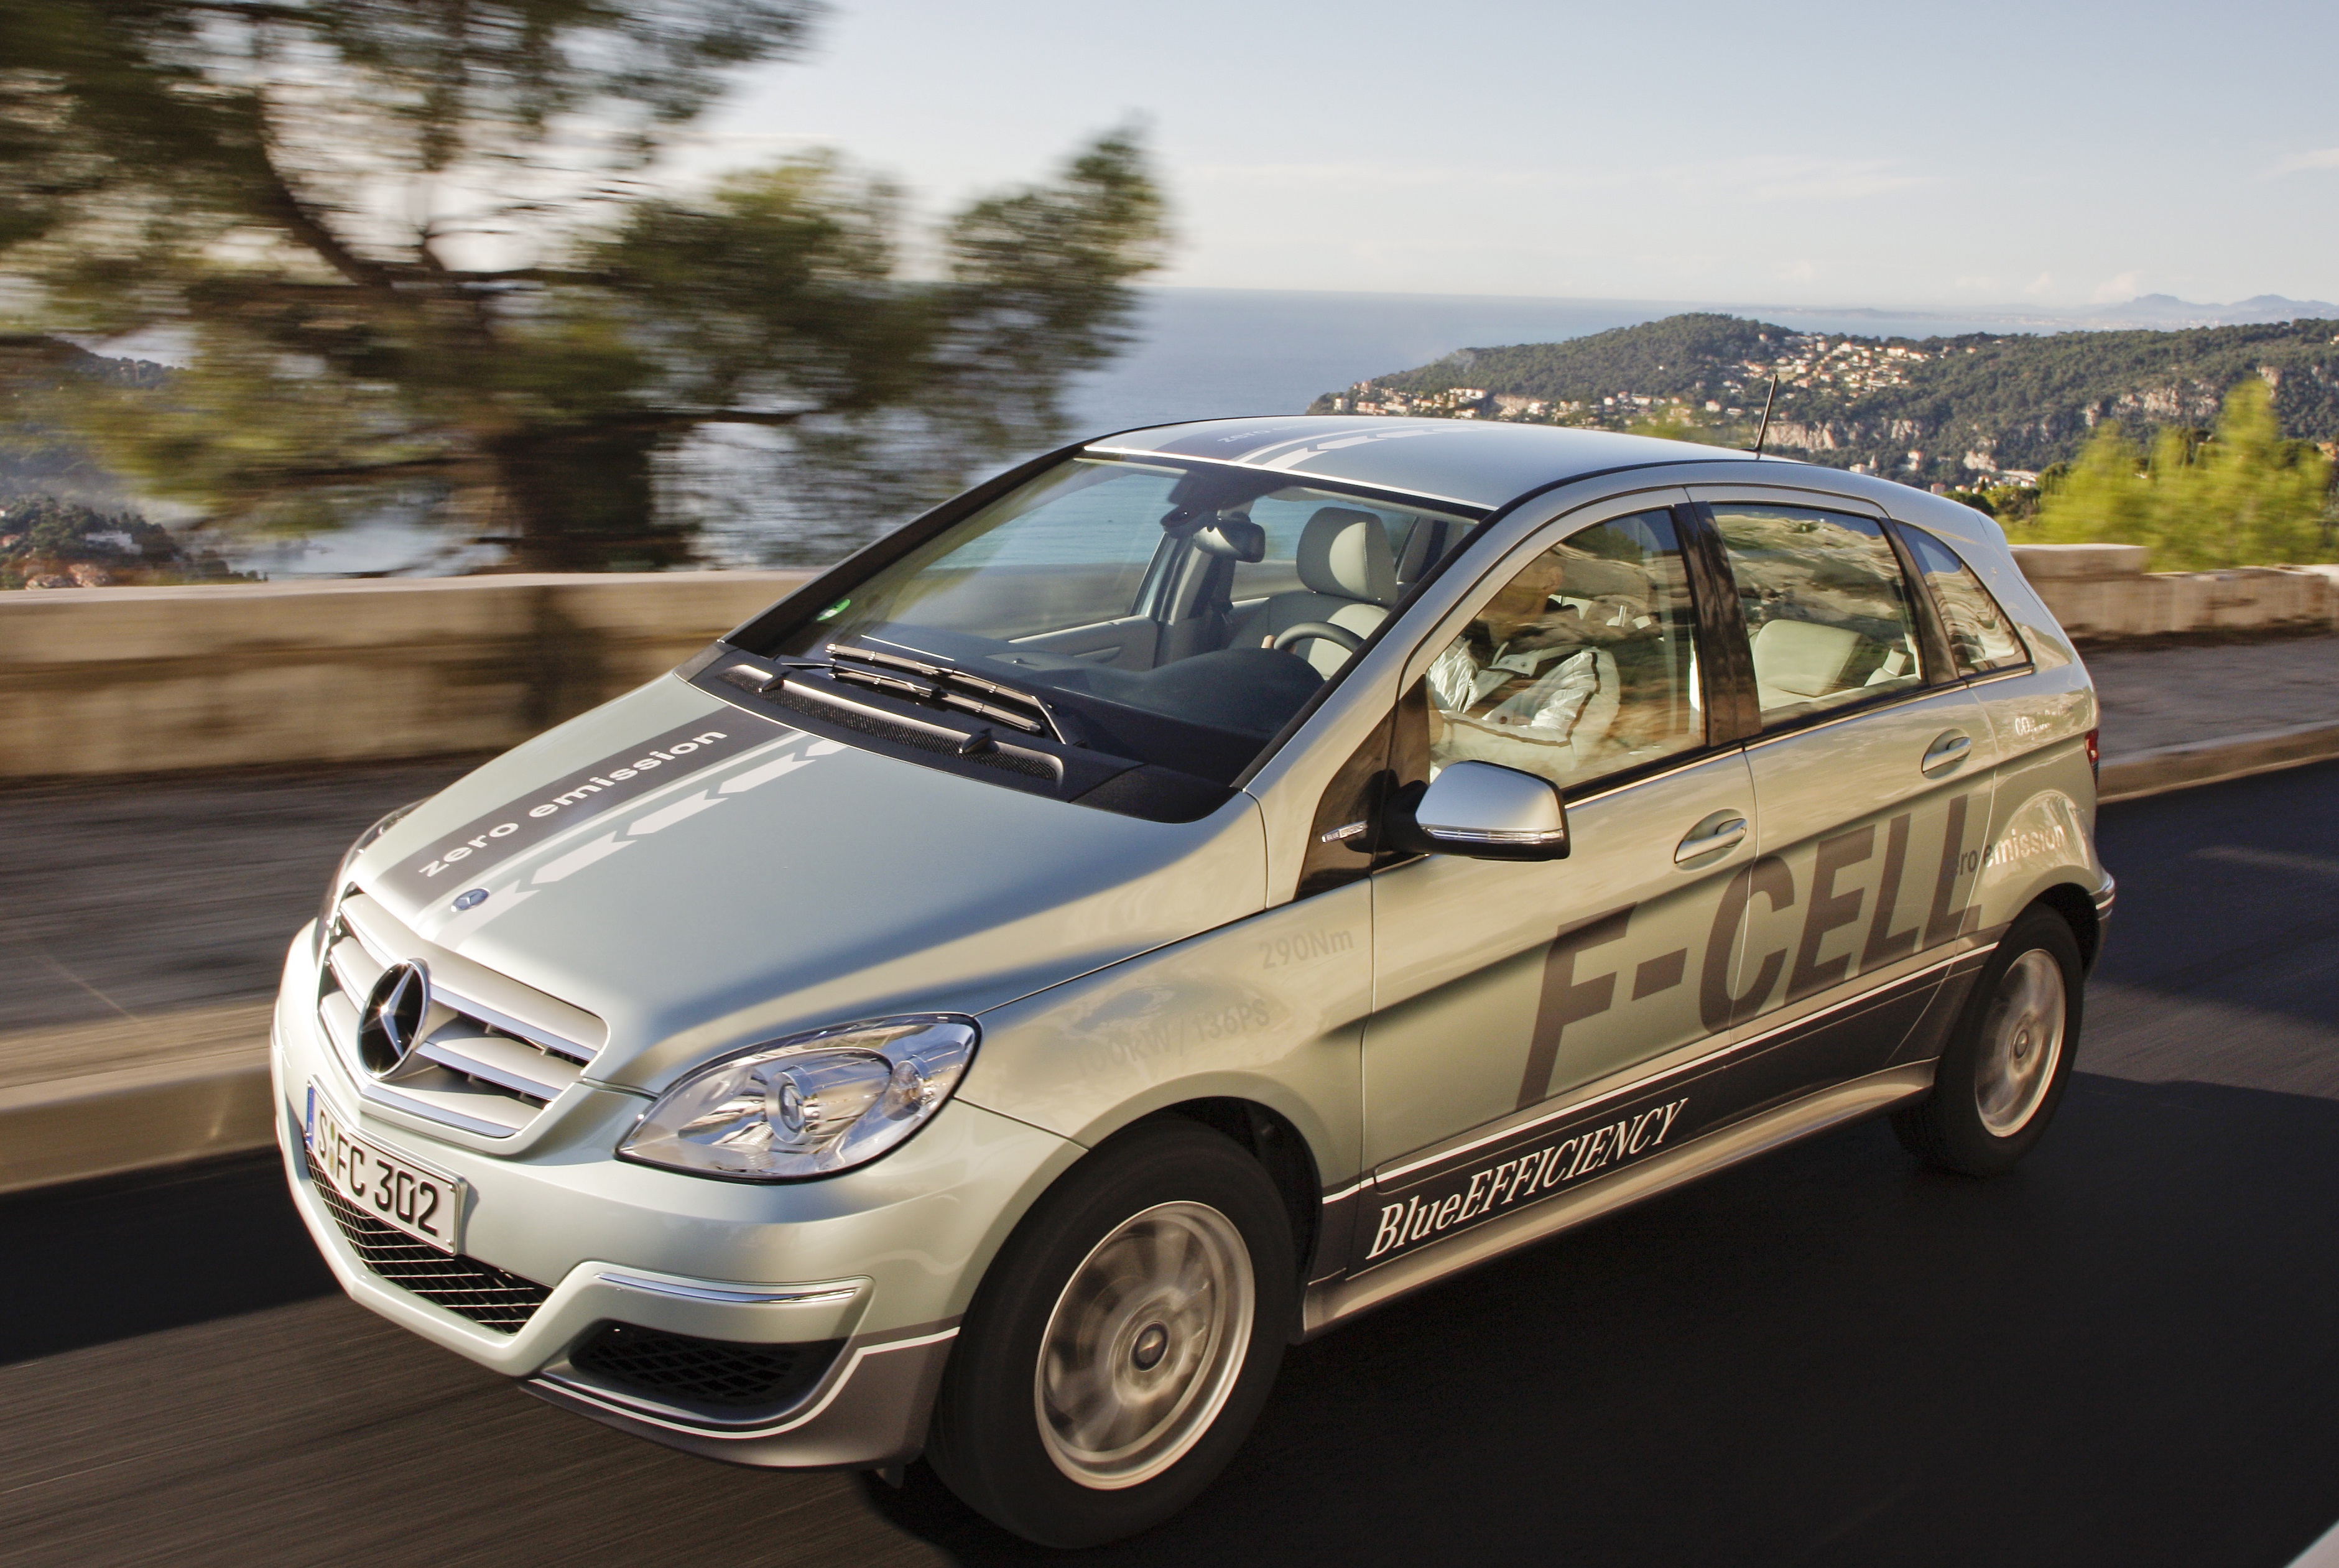 Mercedes unveils world’s first plugin hybrid hydrogen vehicle GLC F